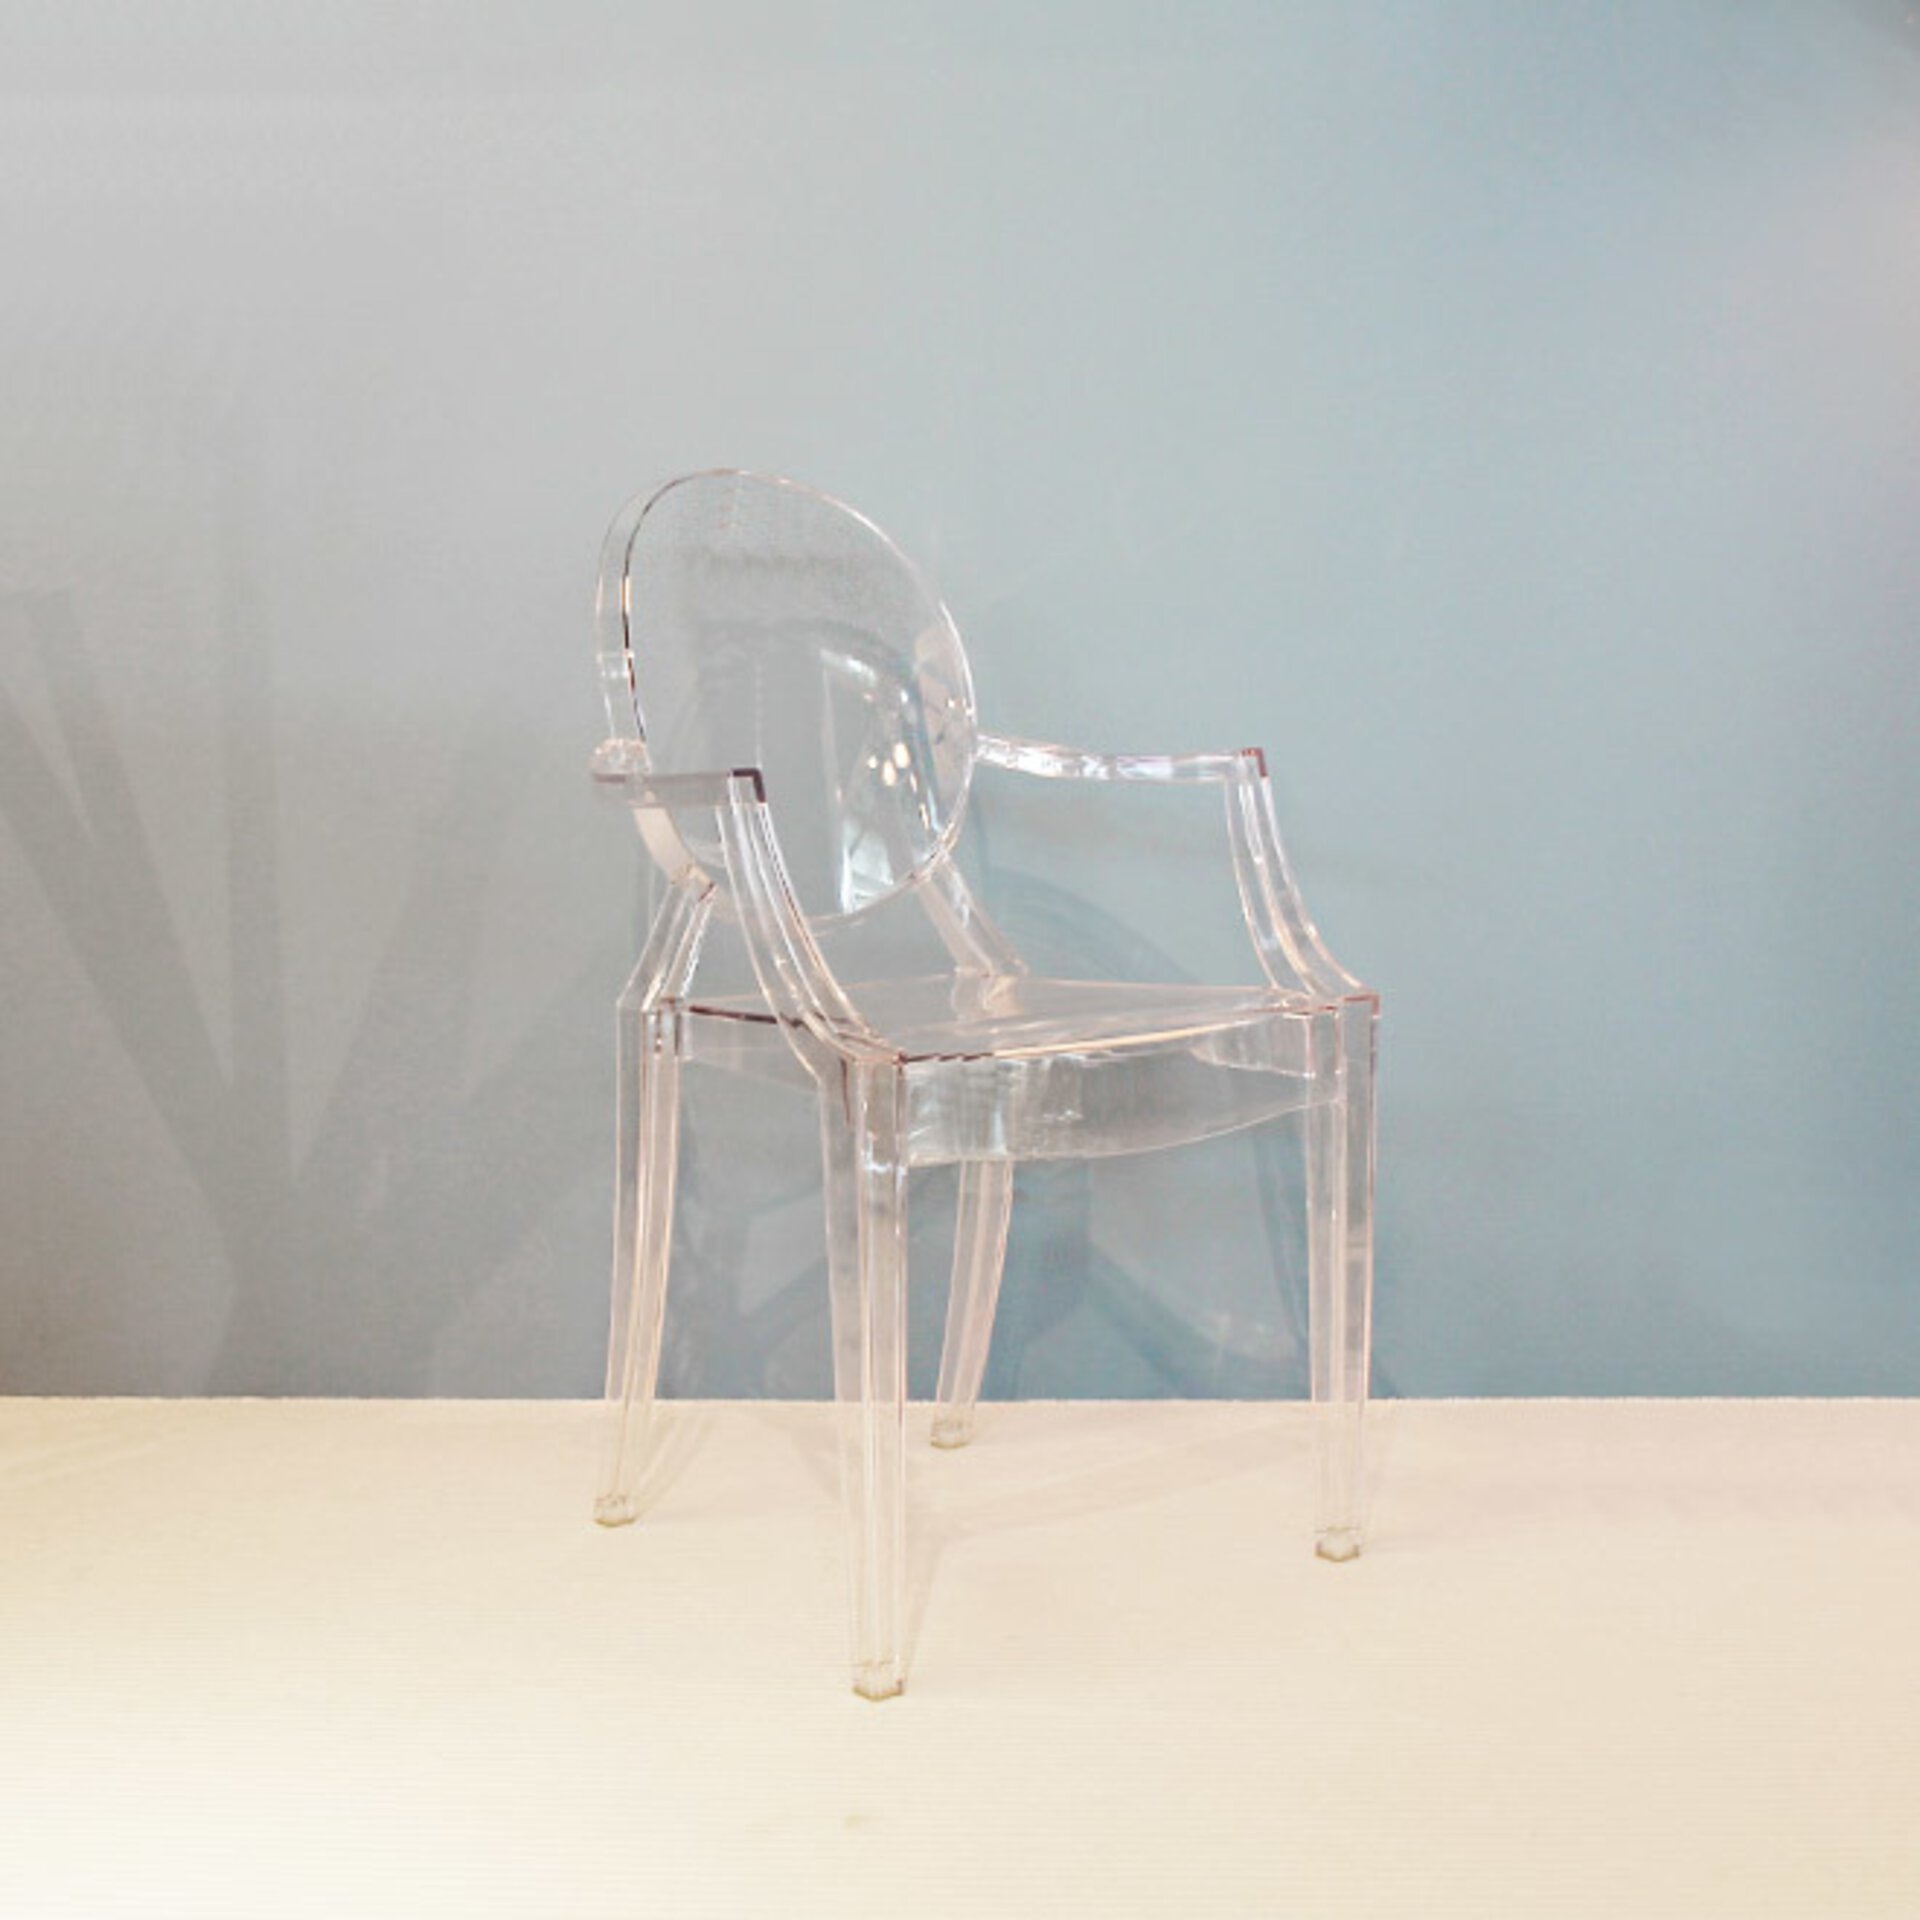 Der Ghost von Kartell ist ein Designer Stuhl für innen und außen. Jetzt bei interni by inhofer entdecken